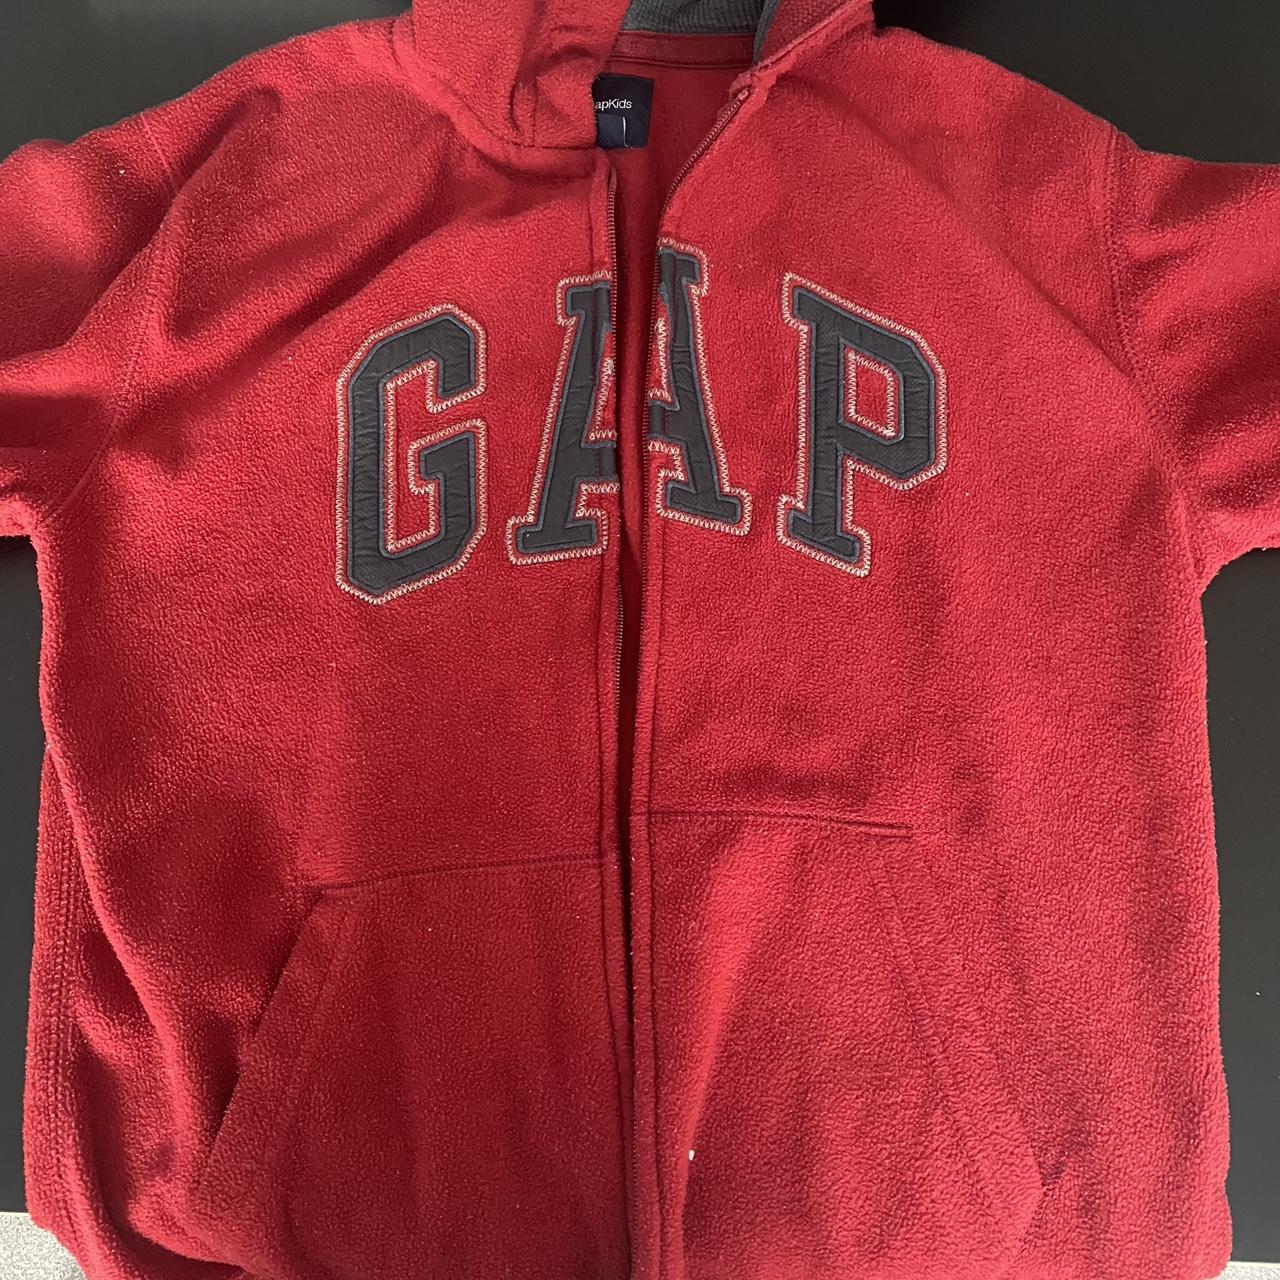 Red fleece vintage gap jumper Zip up size S Unisex - Depop